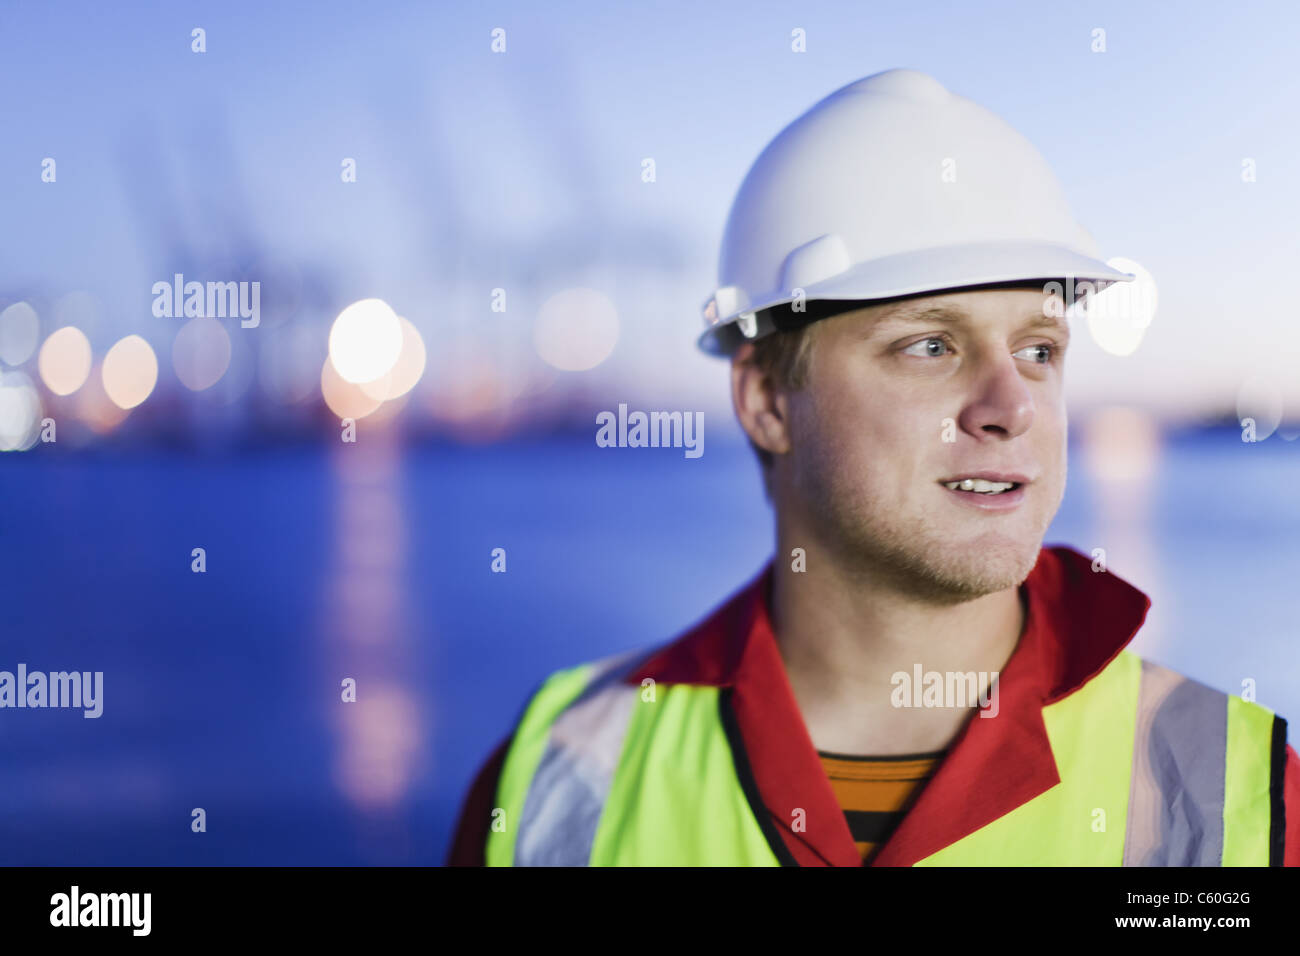 Worker wearing hard hat shipyard Banque D'Images